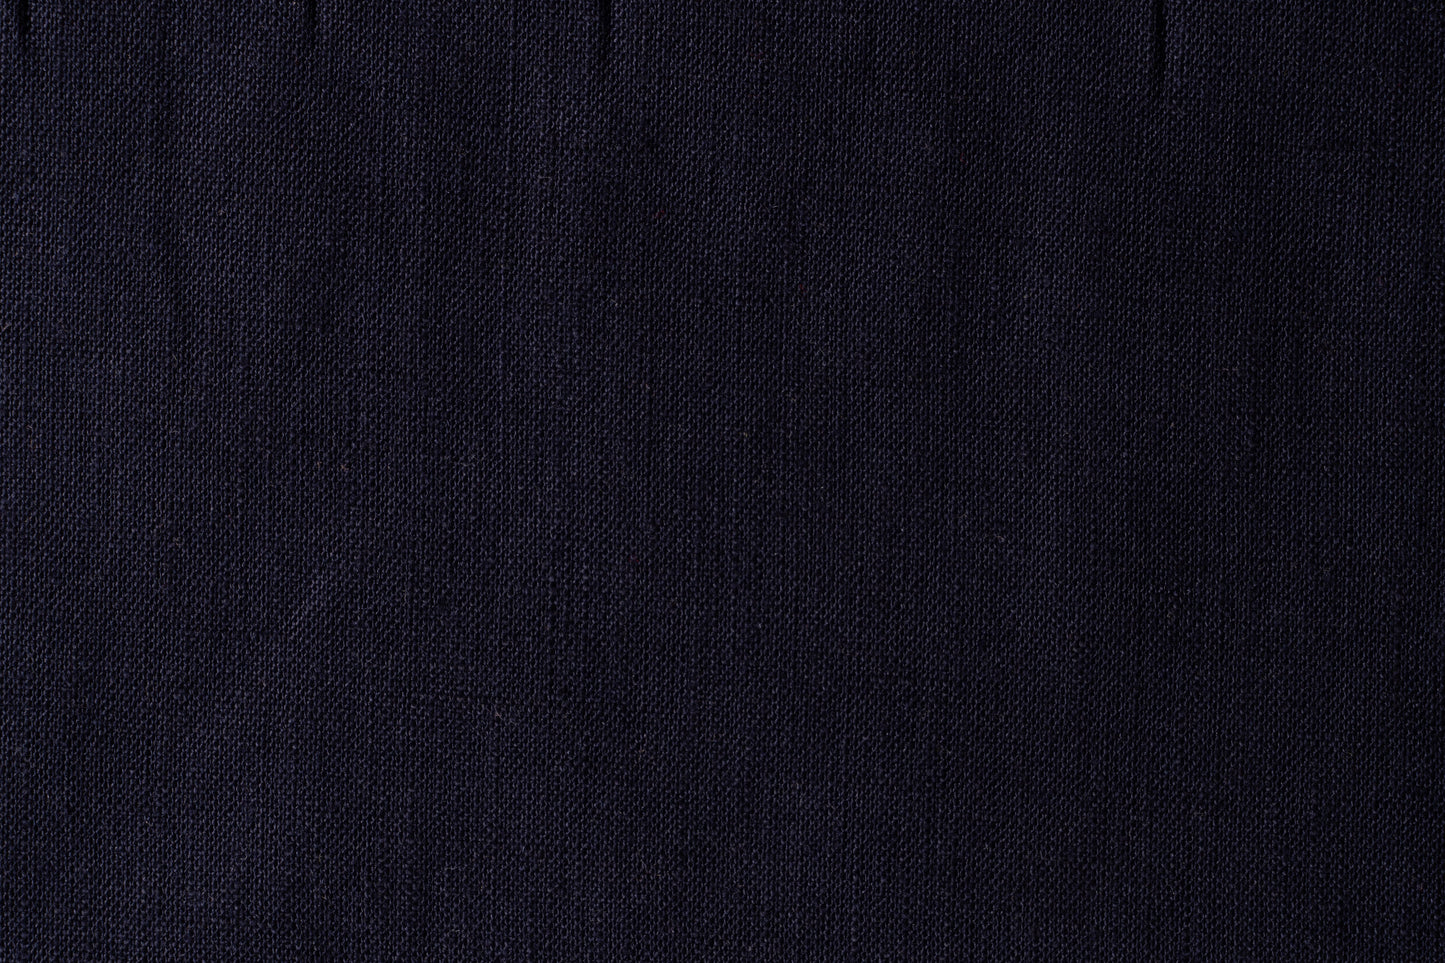 Medium Weight Fabric by the Yard Blue (5.5 Oz/Sq Yard) Swatch